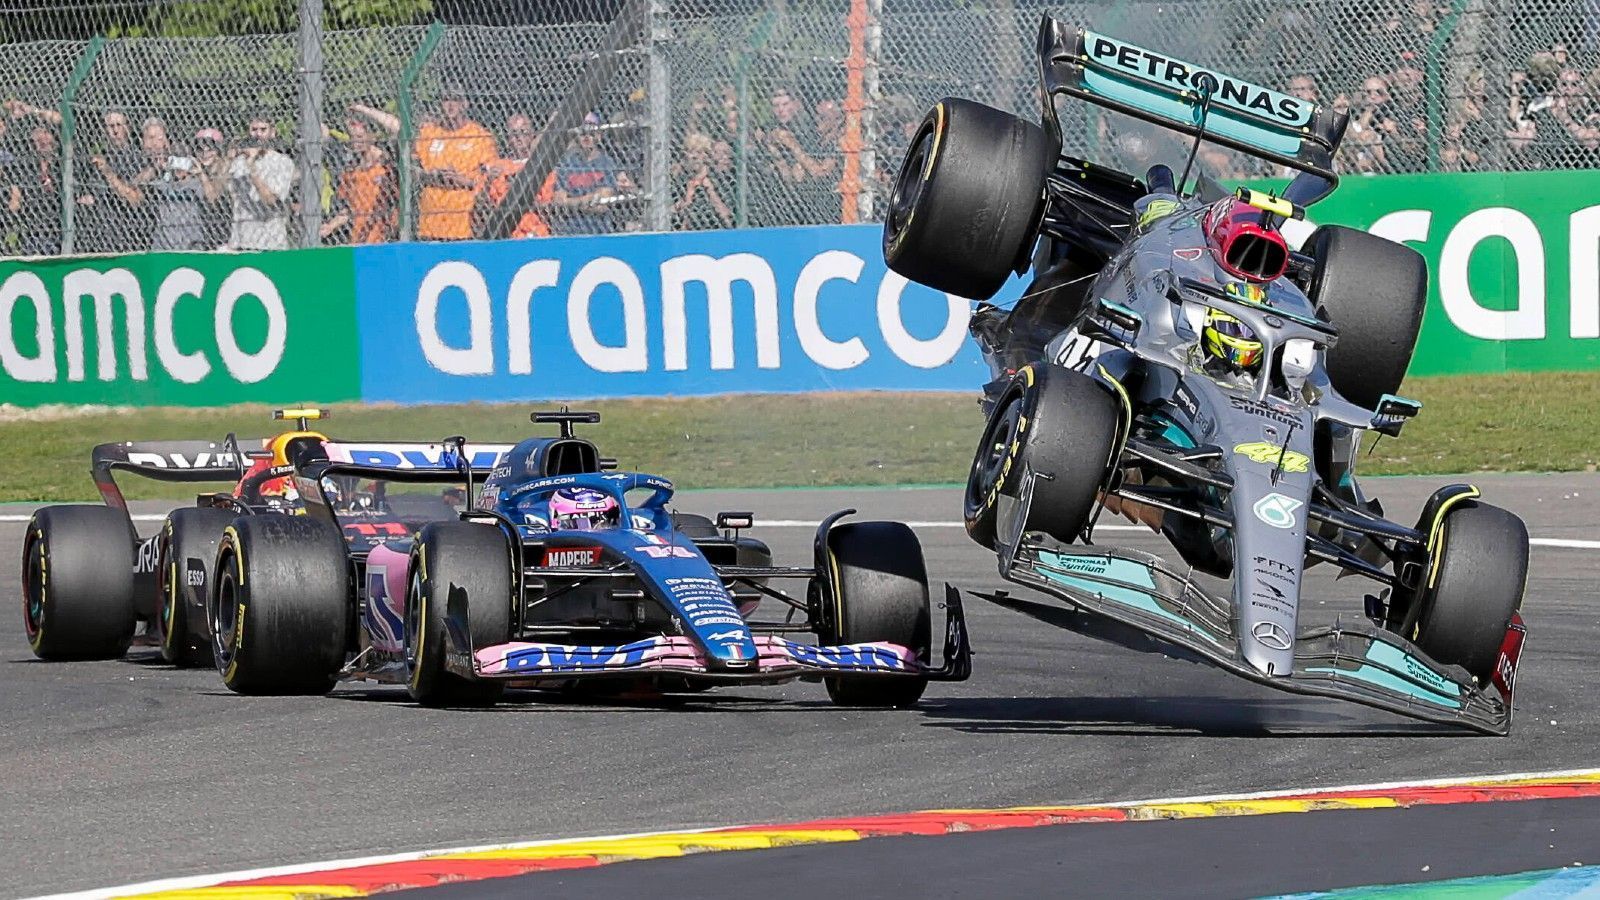 
                <strong>Verlierer: Lewis Hamilton</strong><br>
                Mit Startplatz vier hätte der siebenmalige Weltmeister eigentlich mal wieder eine gute Ausgangsposition gehabt - eigentlich. Gleich in der ersten Runde übersah Hamilton Alpine-Pilot Fernando Alonso im toten Winkel, kollidierte und stieg mit seinem Mercedes in die Luft. Der Unfall ging zwar glimpflich aus, eine Schimpftirade des Spaniers hatte der Brite aber dennoch gebucht. Hamilton musste sein Auto abstellen, das Rennen war früh vorbei. Weil Alonso Hamilton als "Idiot" beschimmpfte, gab es in der Folge auch keine Aussprache zwischen beiden. Bitter zudem: Mercedes war nach vielversprechenden Ergebnissen von den beiden Top-Teams so weit weg wie lange nicht. Bei den Silberpfeilen herrscht Kater, da hilft auch der vierte Platz von George Russell nichts.
              